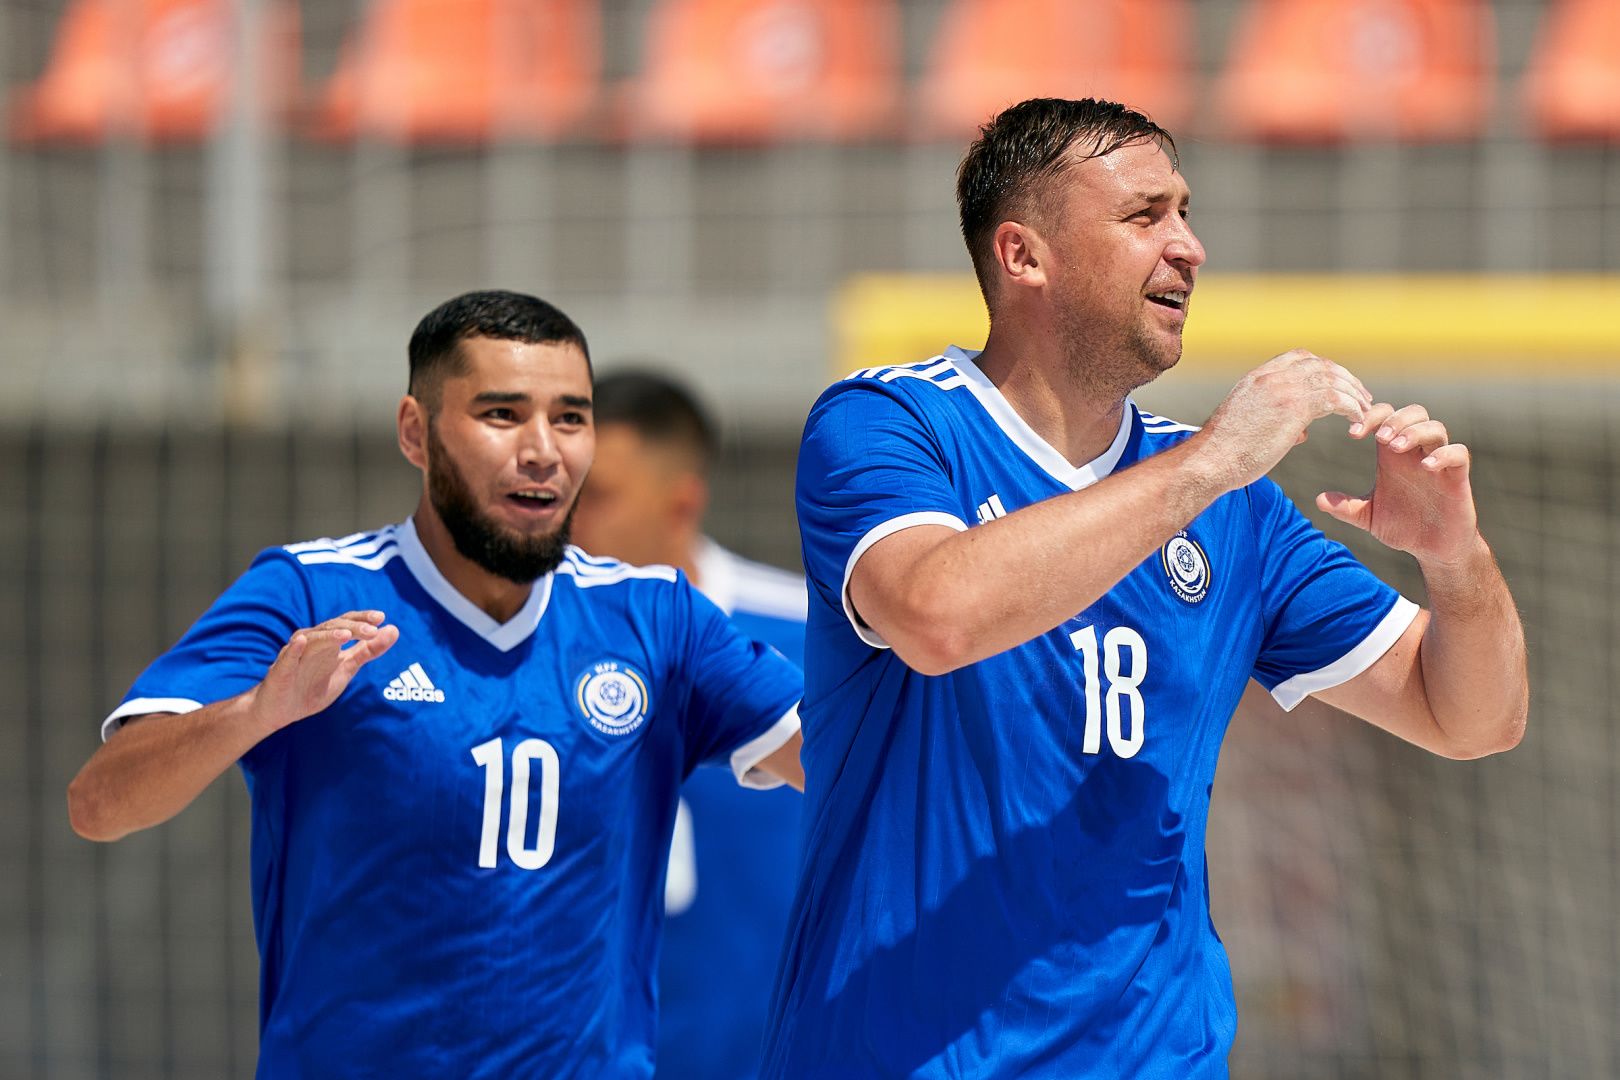 Сборная Казахстана по пляжному футболу вышла в топ-дивизион Евролиги